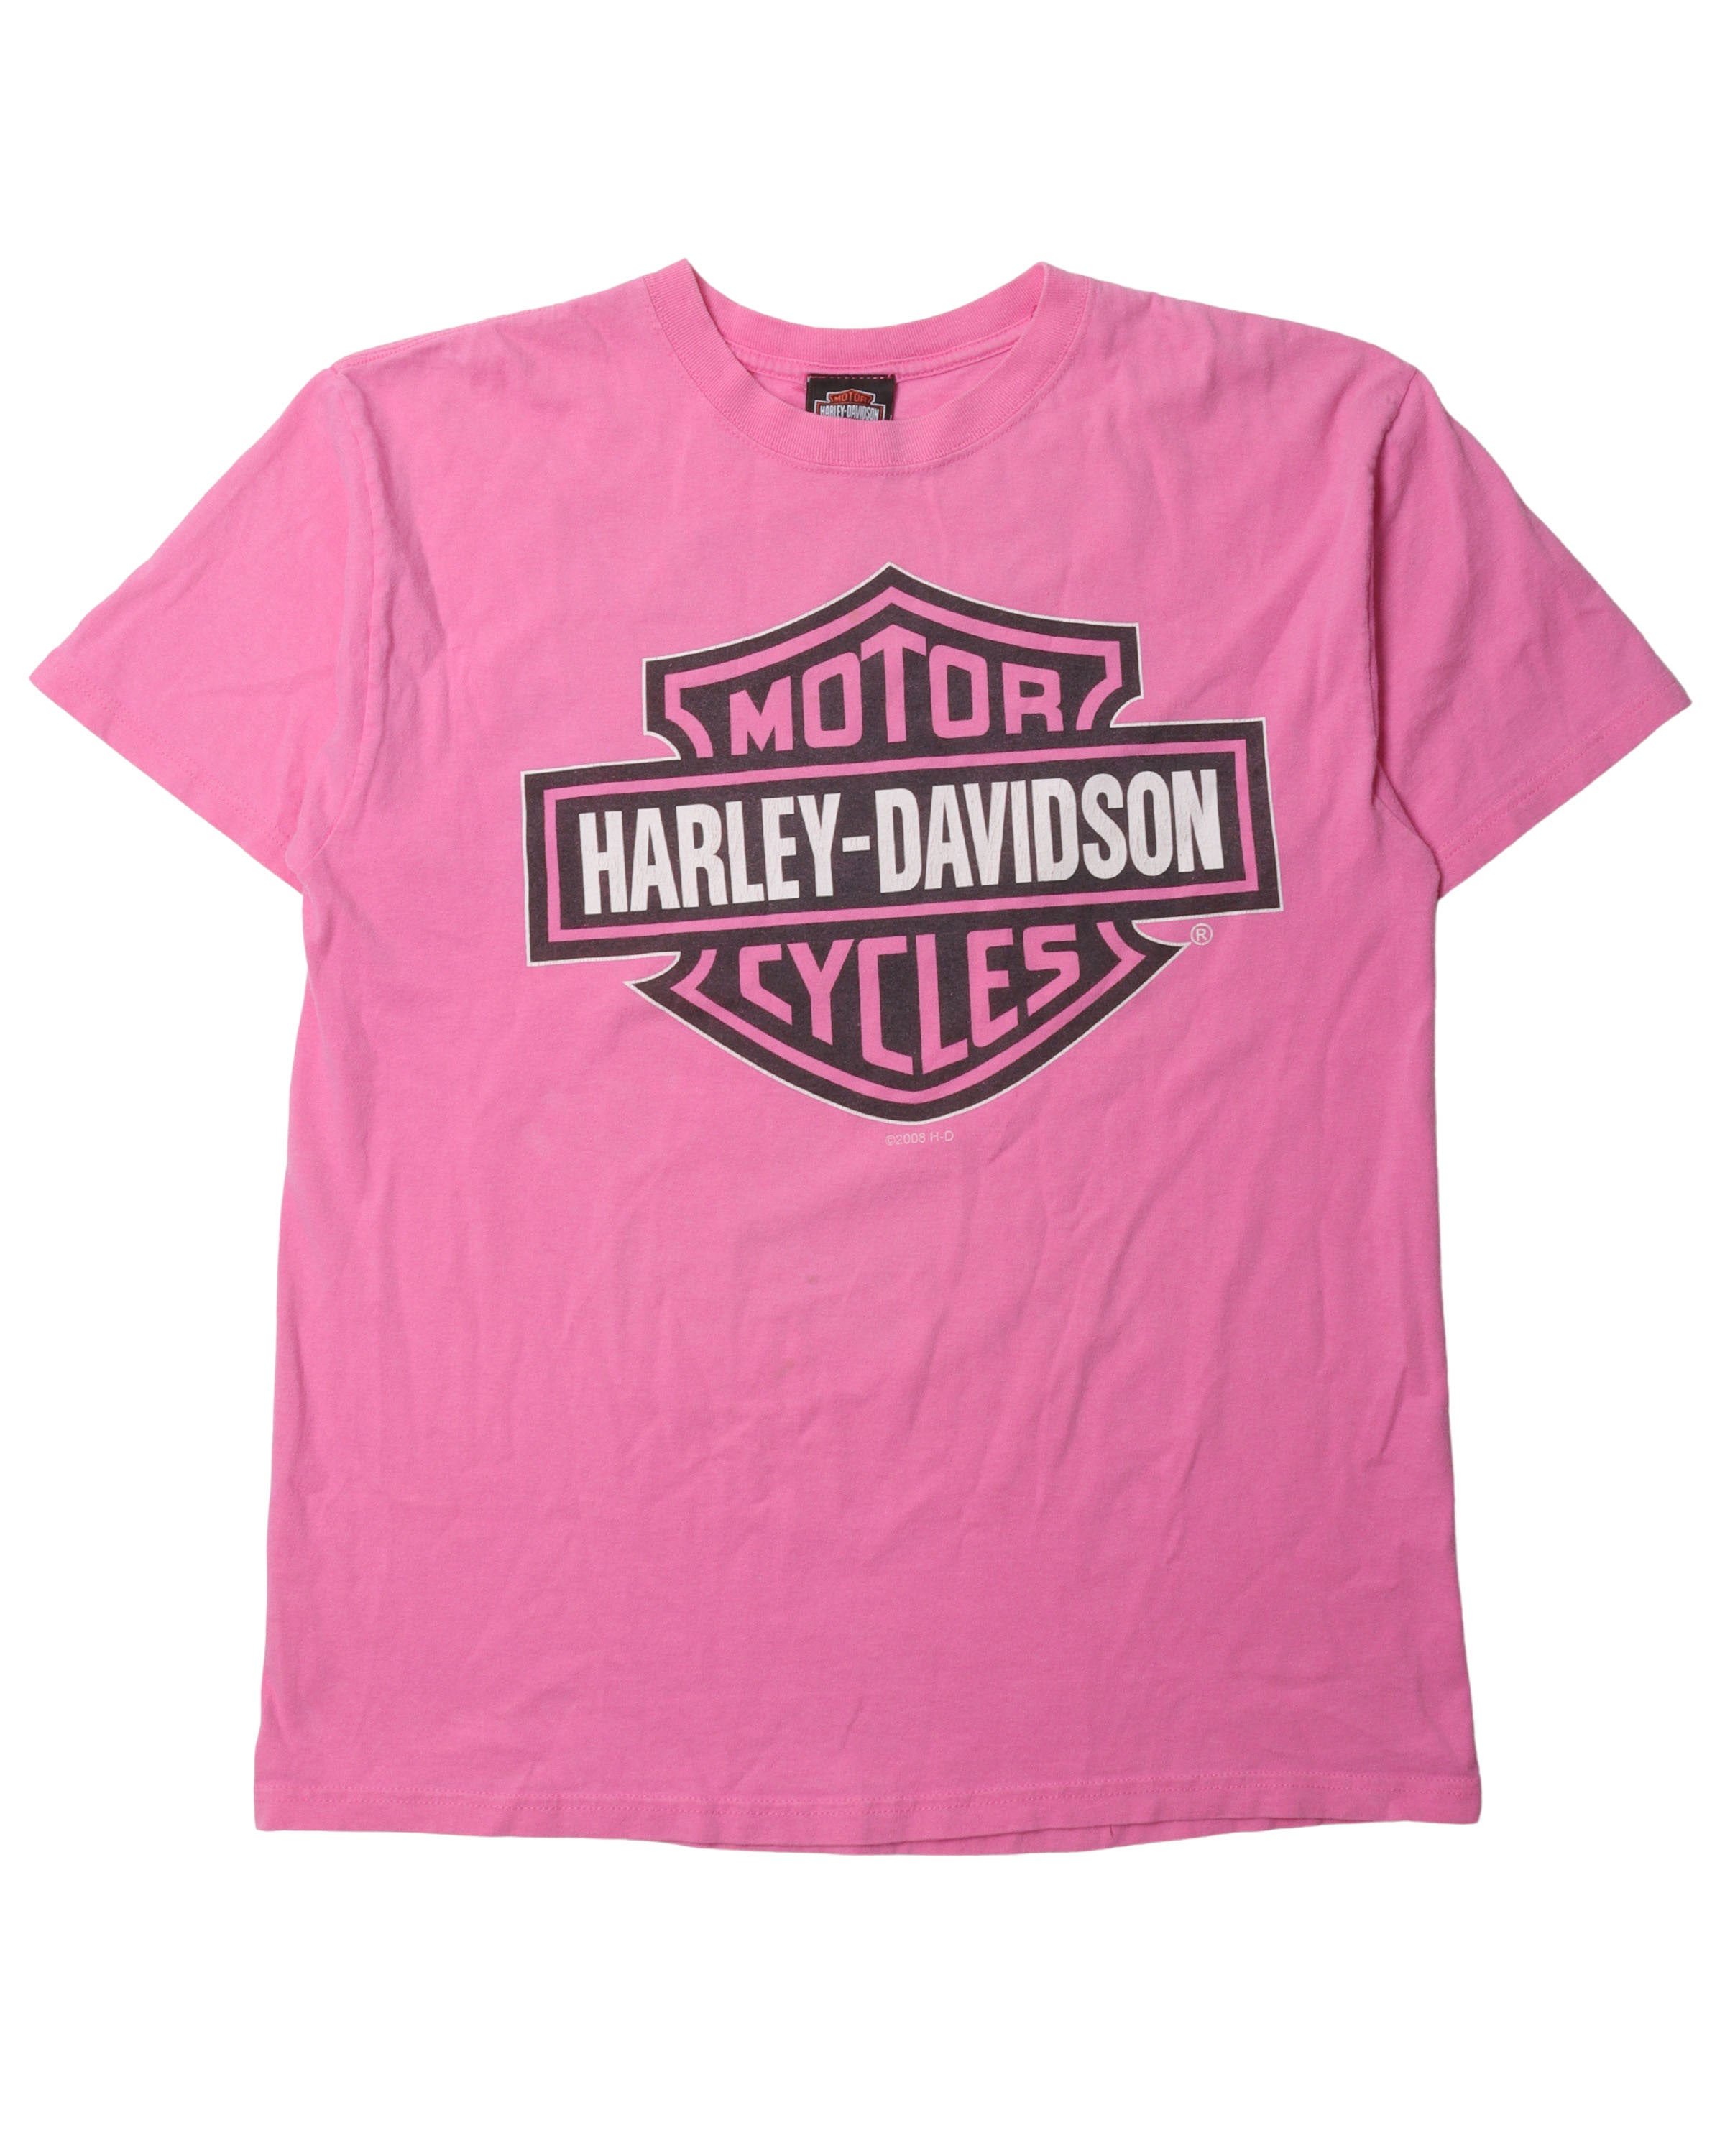 Vintage Harley Davidson Pink T Shirt 